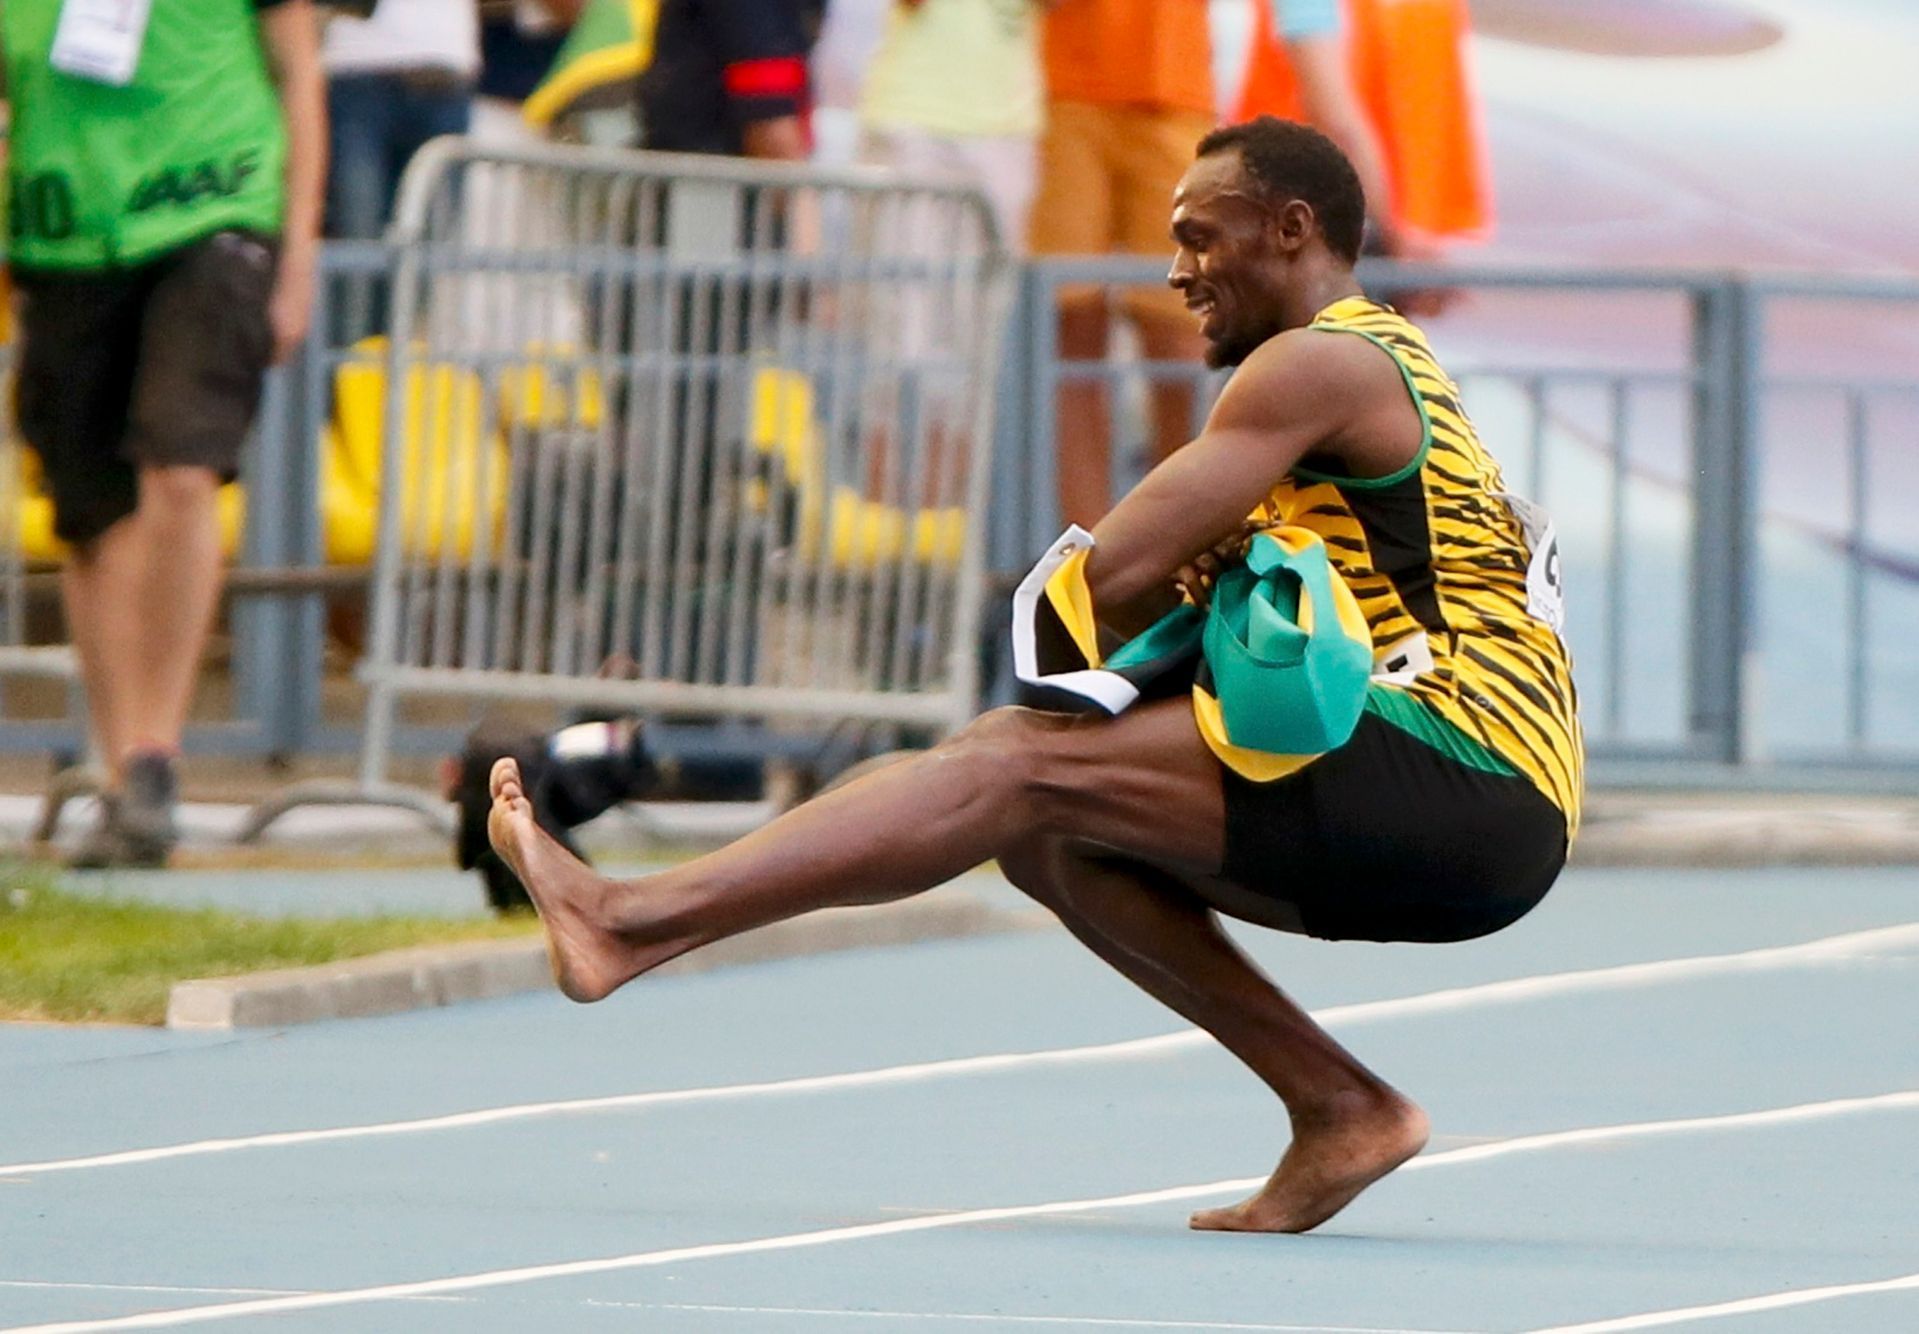 MS v atletice 2013, 4x100 muži - finále: Usain Bolt